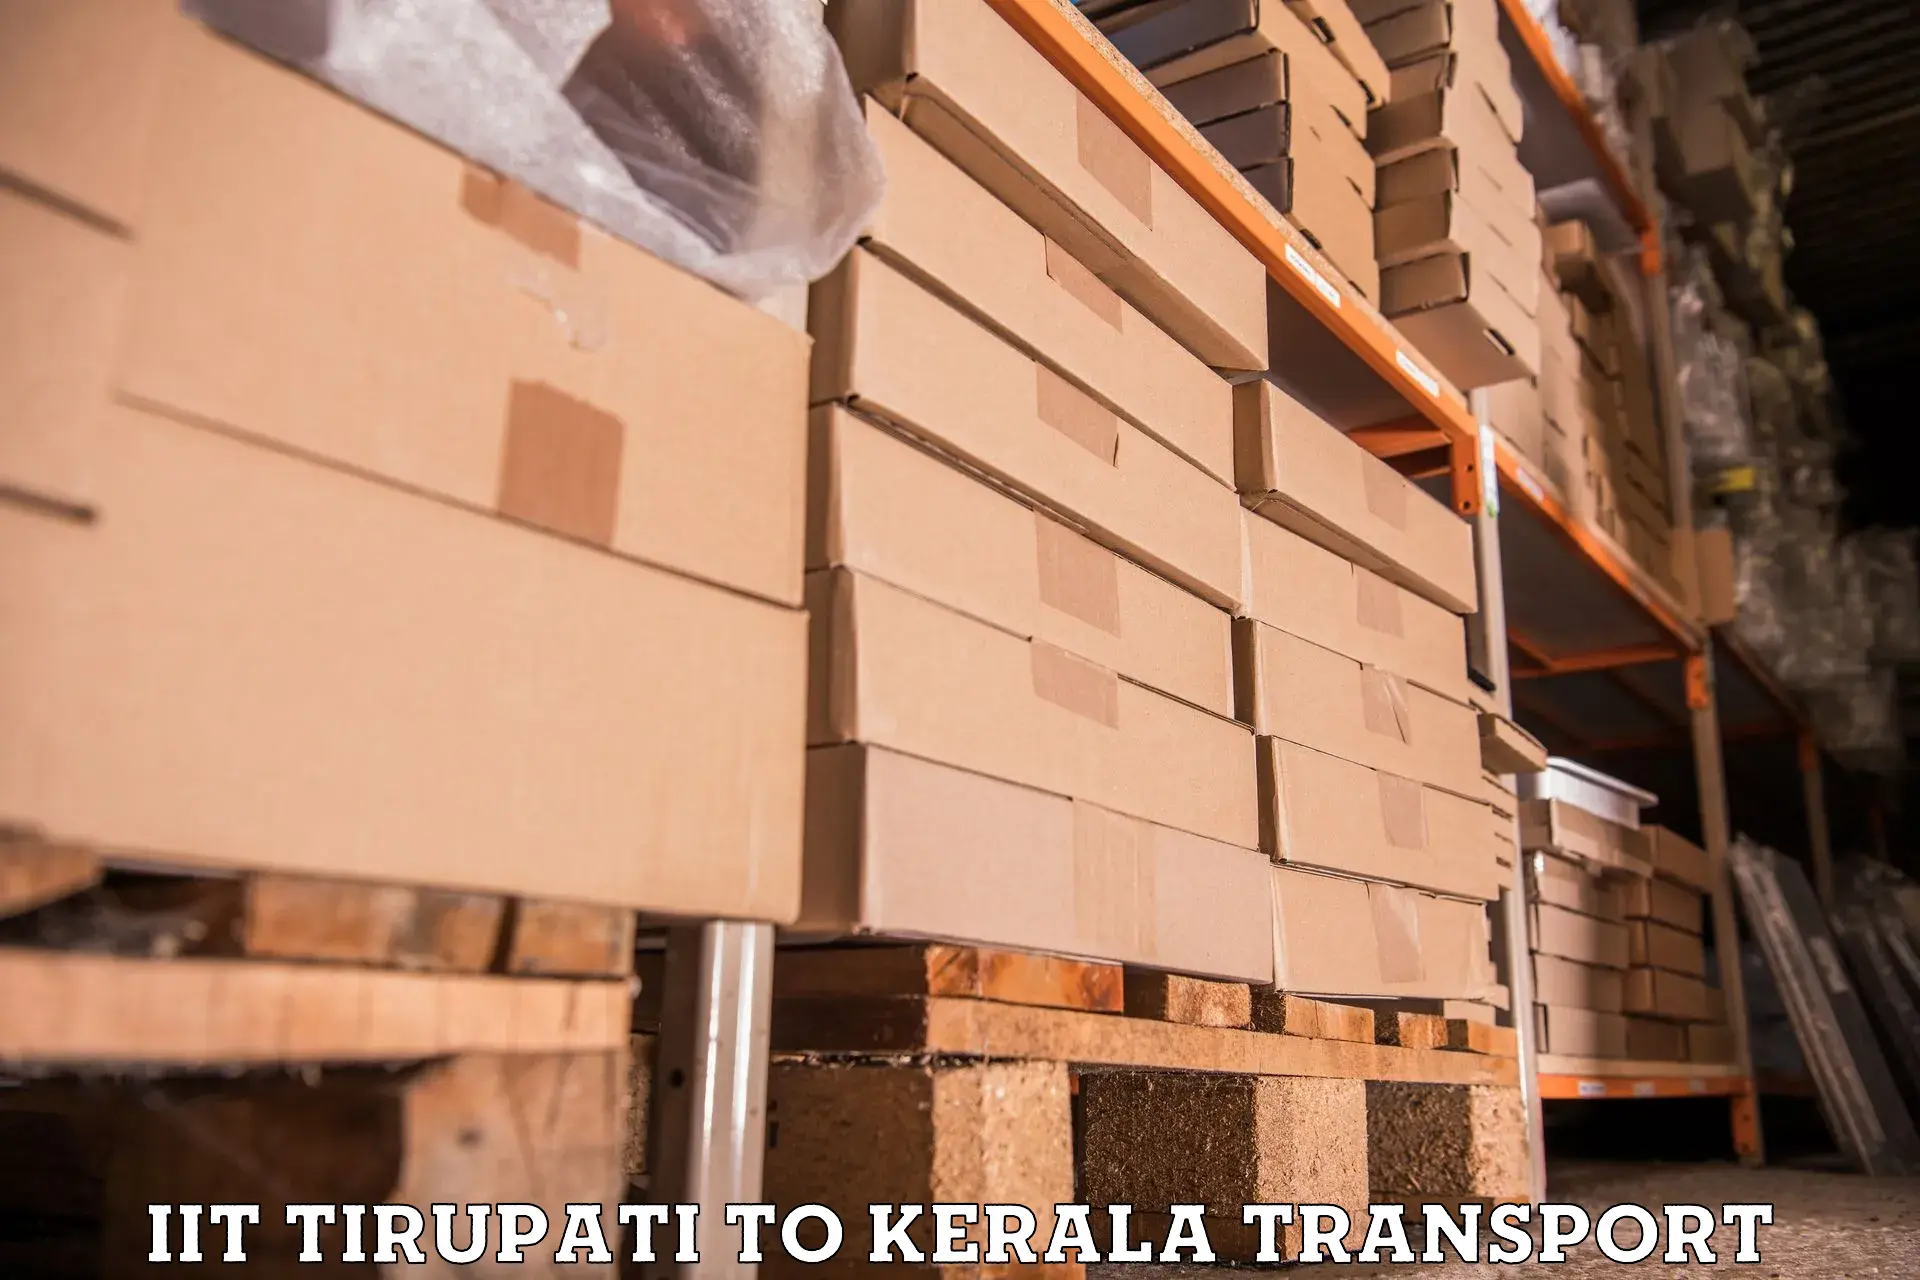 Shipping partner IIT Tirupati to Kannur